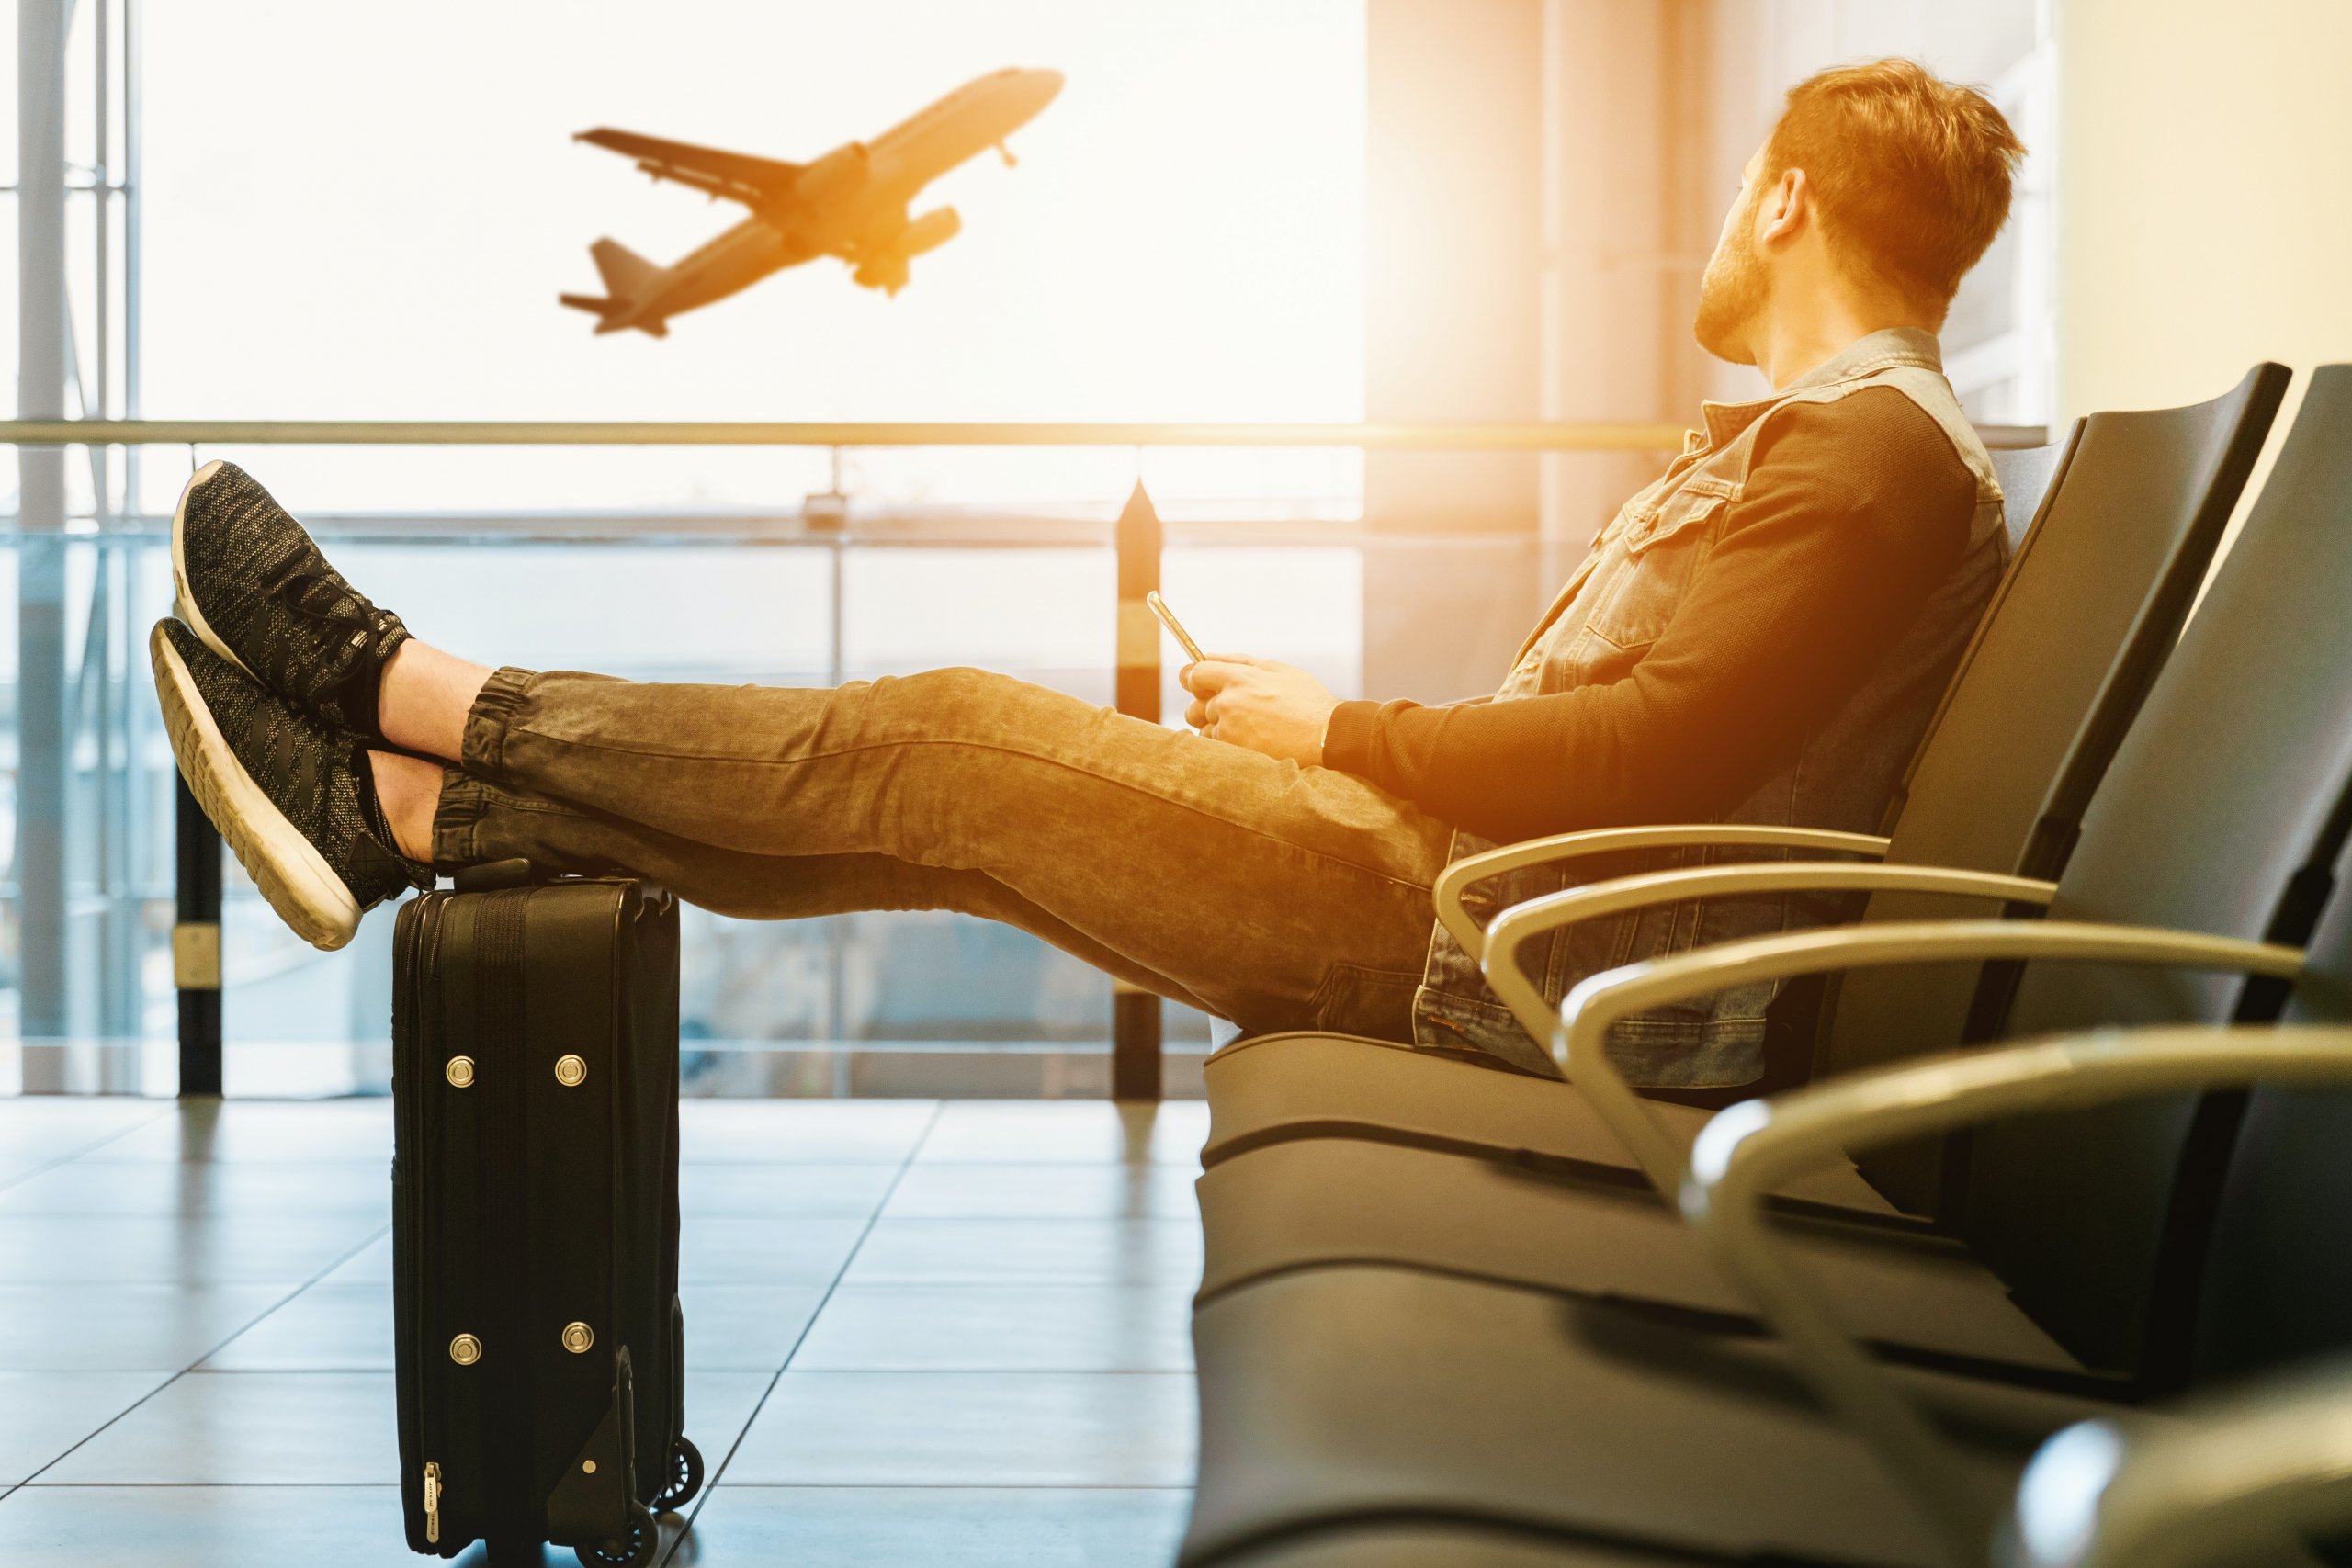 Homem sentado em aeroporto observando avião decolar